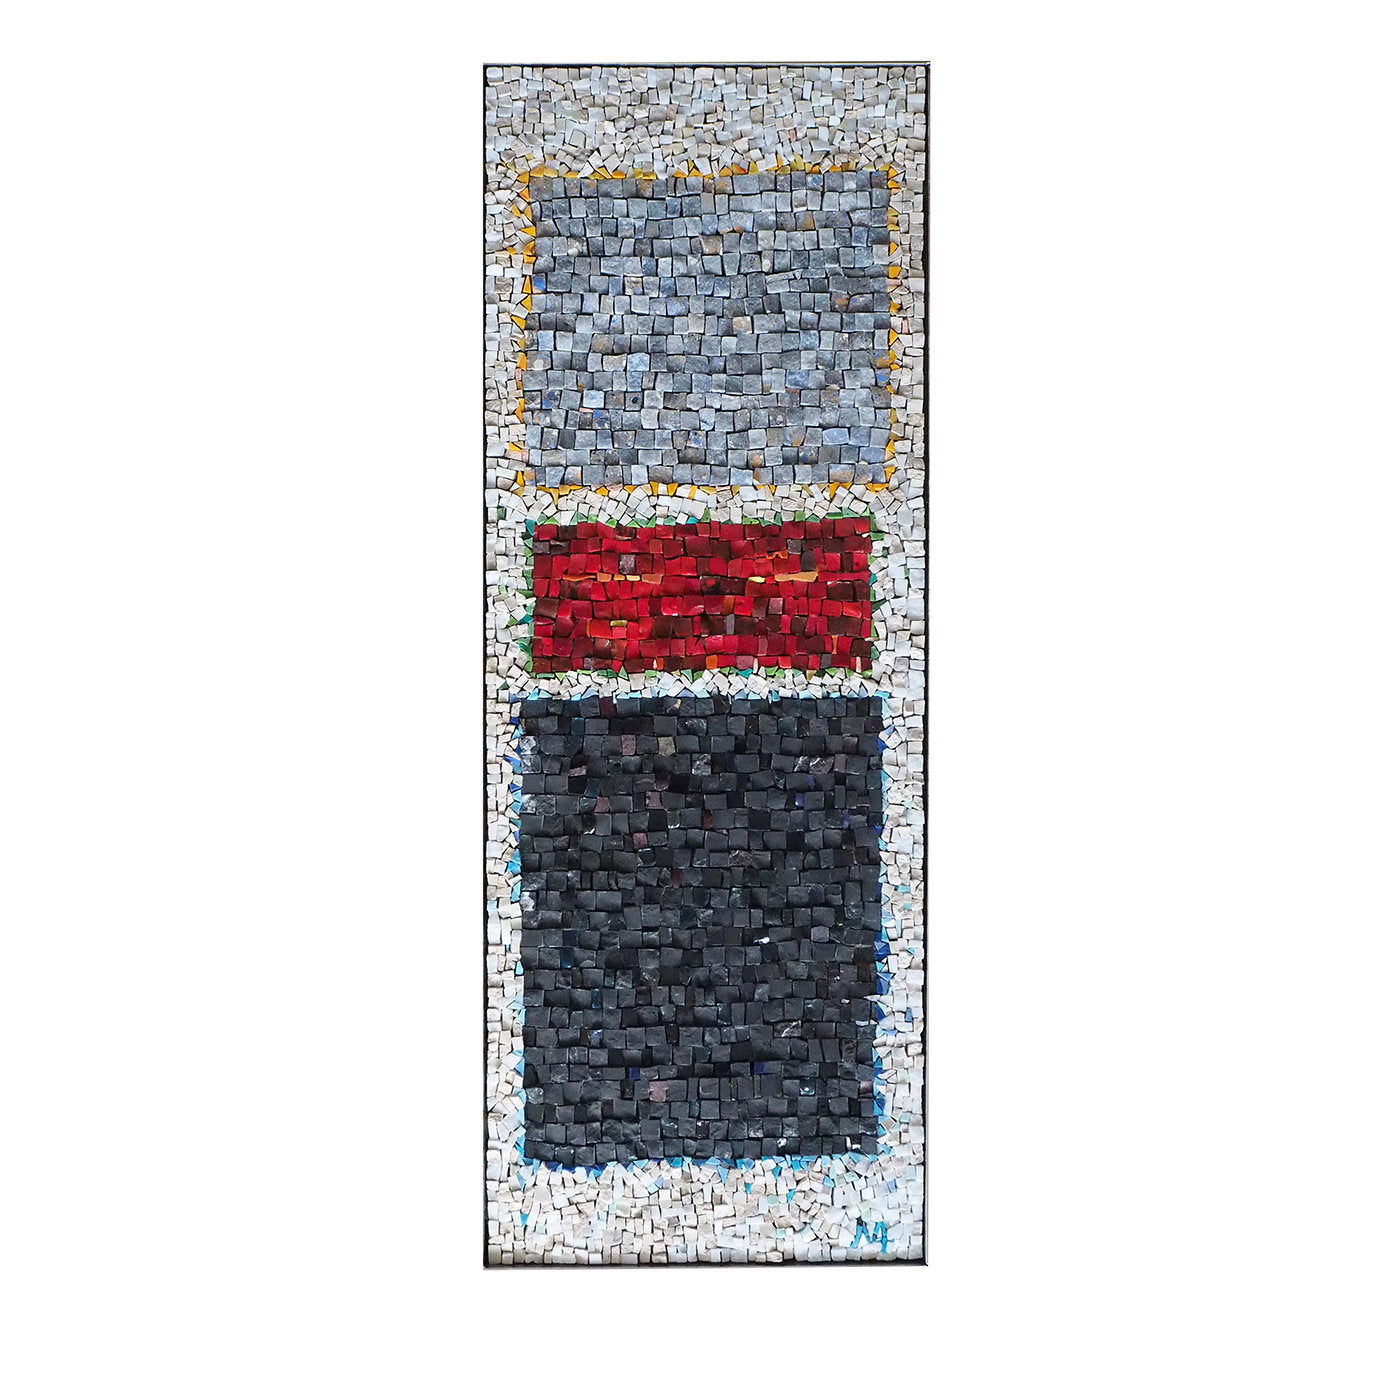 Panel de mosaico Omaggio a Ciussi - Vista principal